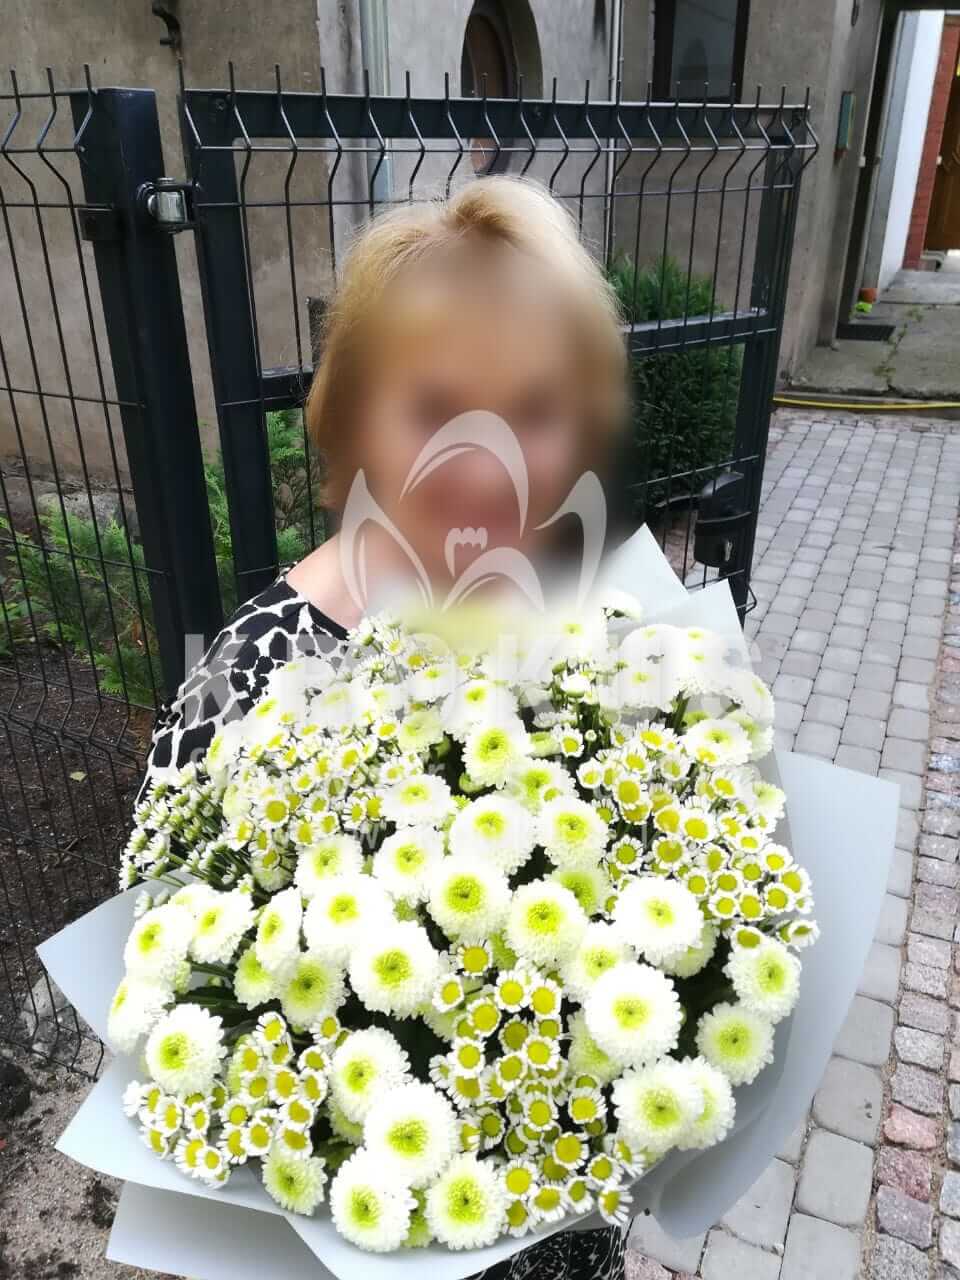 Доставка цветов в город Рига (ромашкихризантемы)